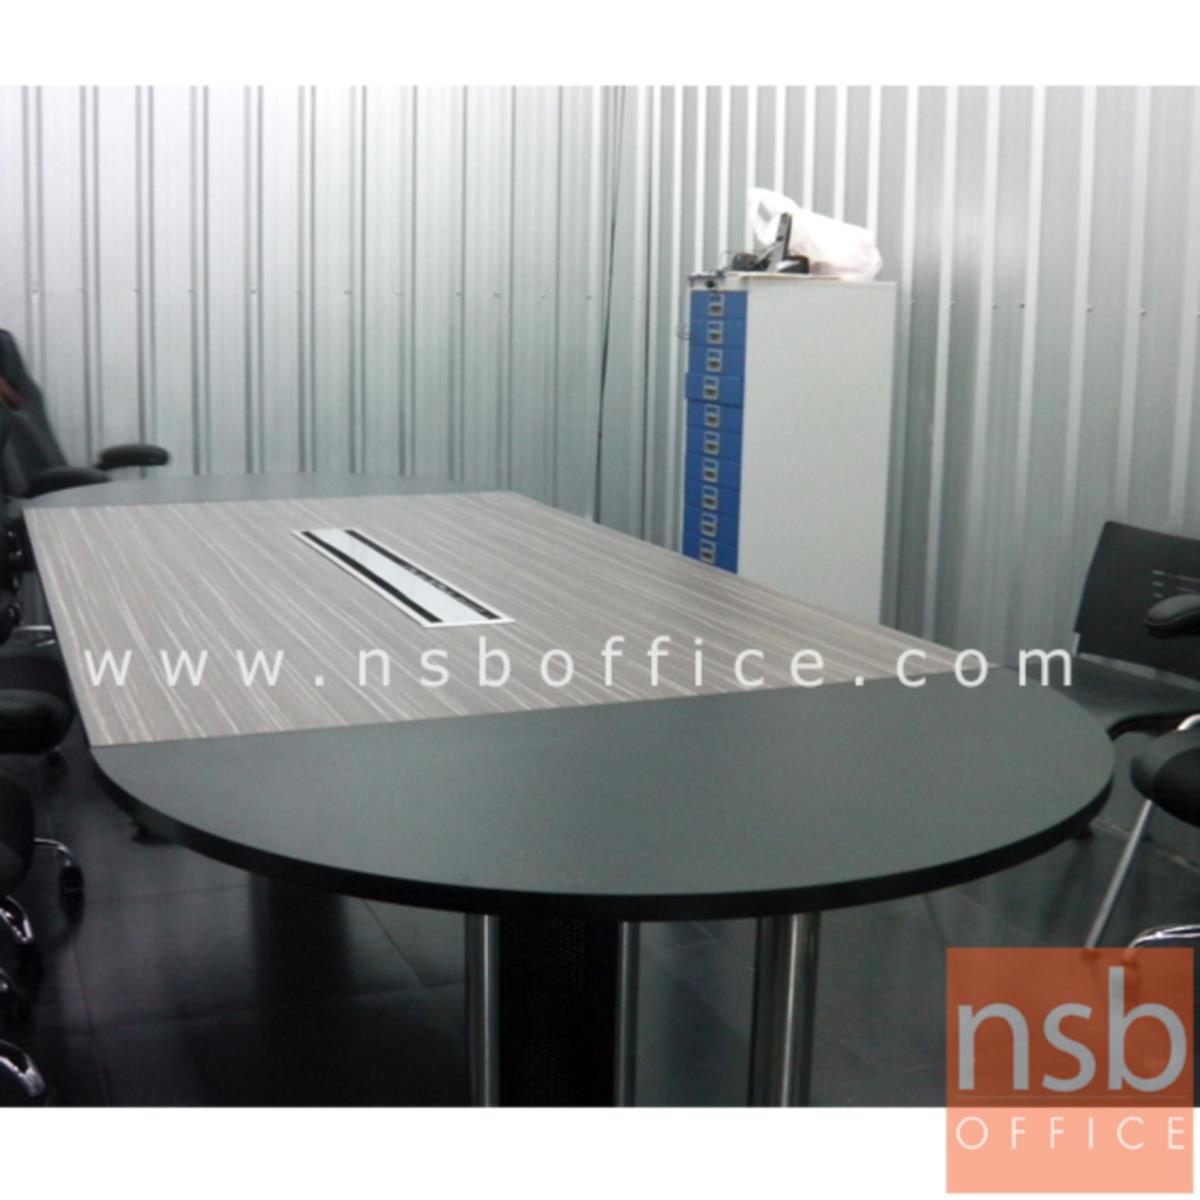 โต๊ะประชุมตรงต่อโต๊ะเข้ามุมโค้ง   ขนาด 320W cm. พร้อมรางไฟตรงกลาง A24A006-5 ขาเหล็ก